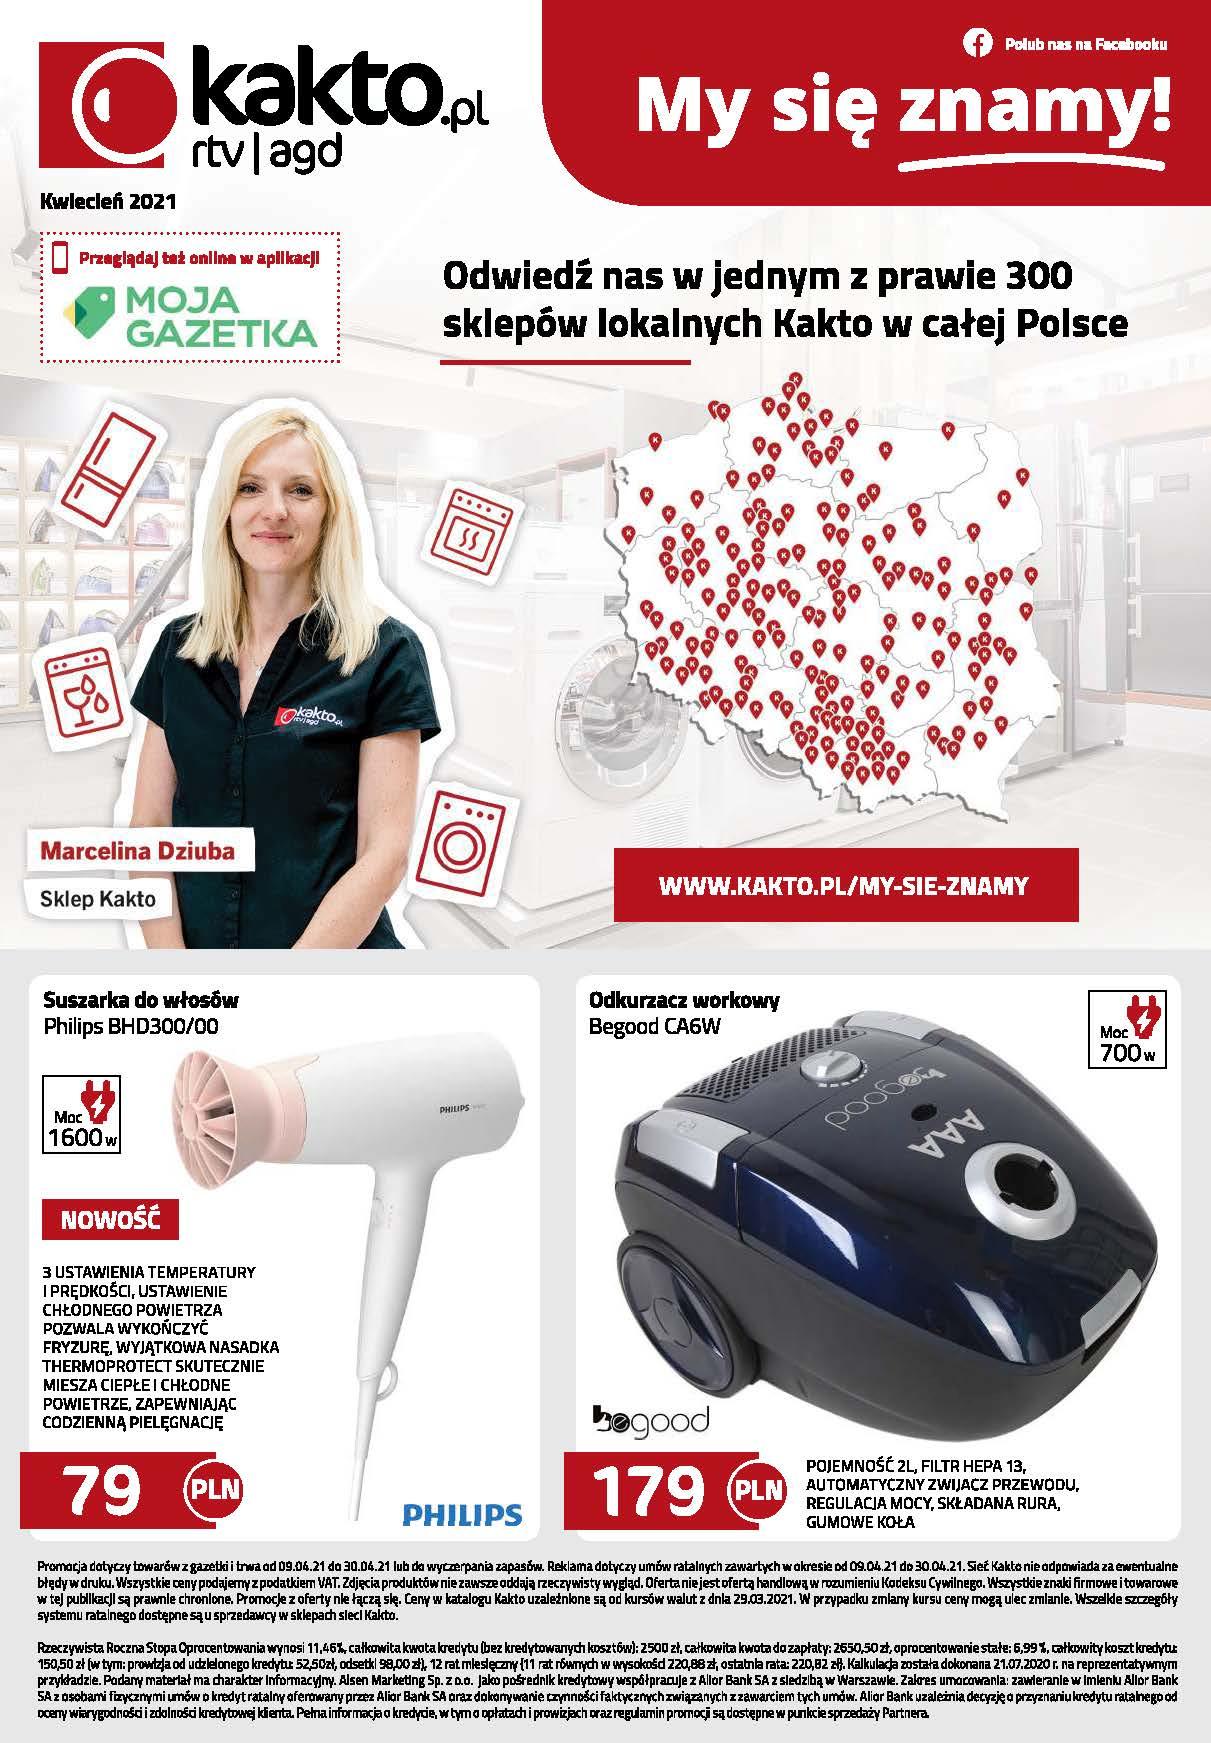 Gazetka promocyjna Kakto.pl do 30/04/2021 str.8